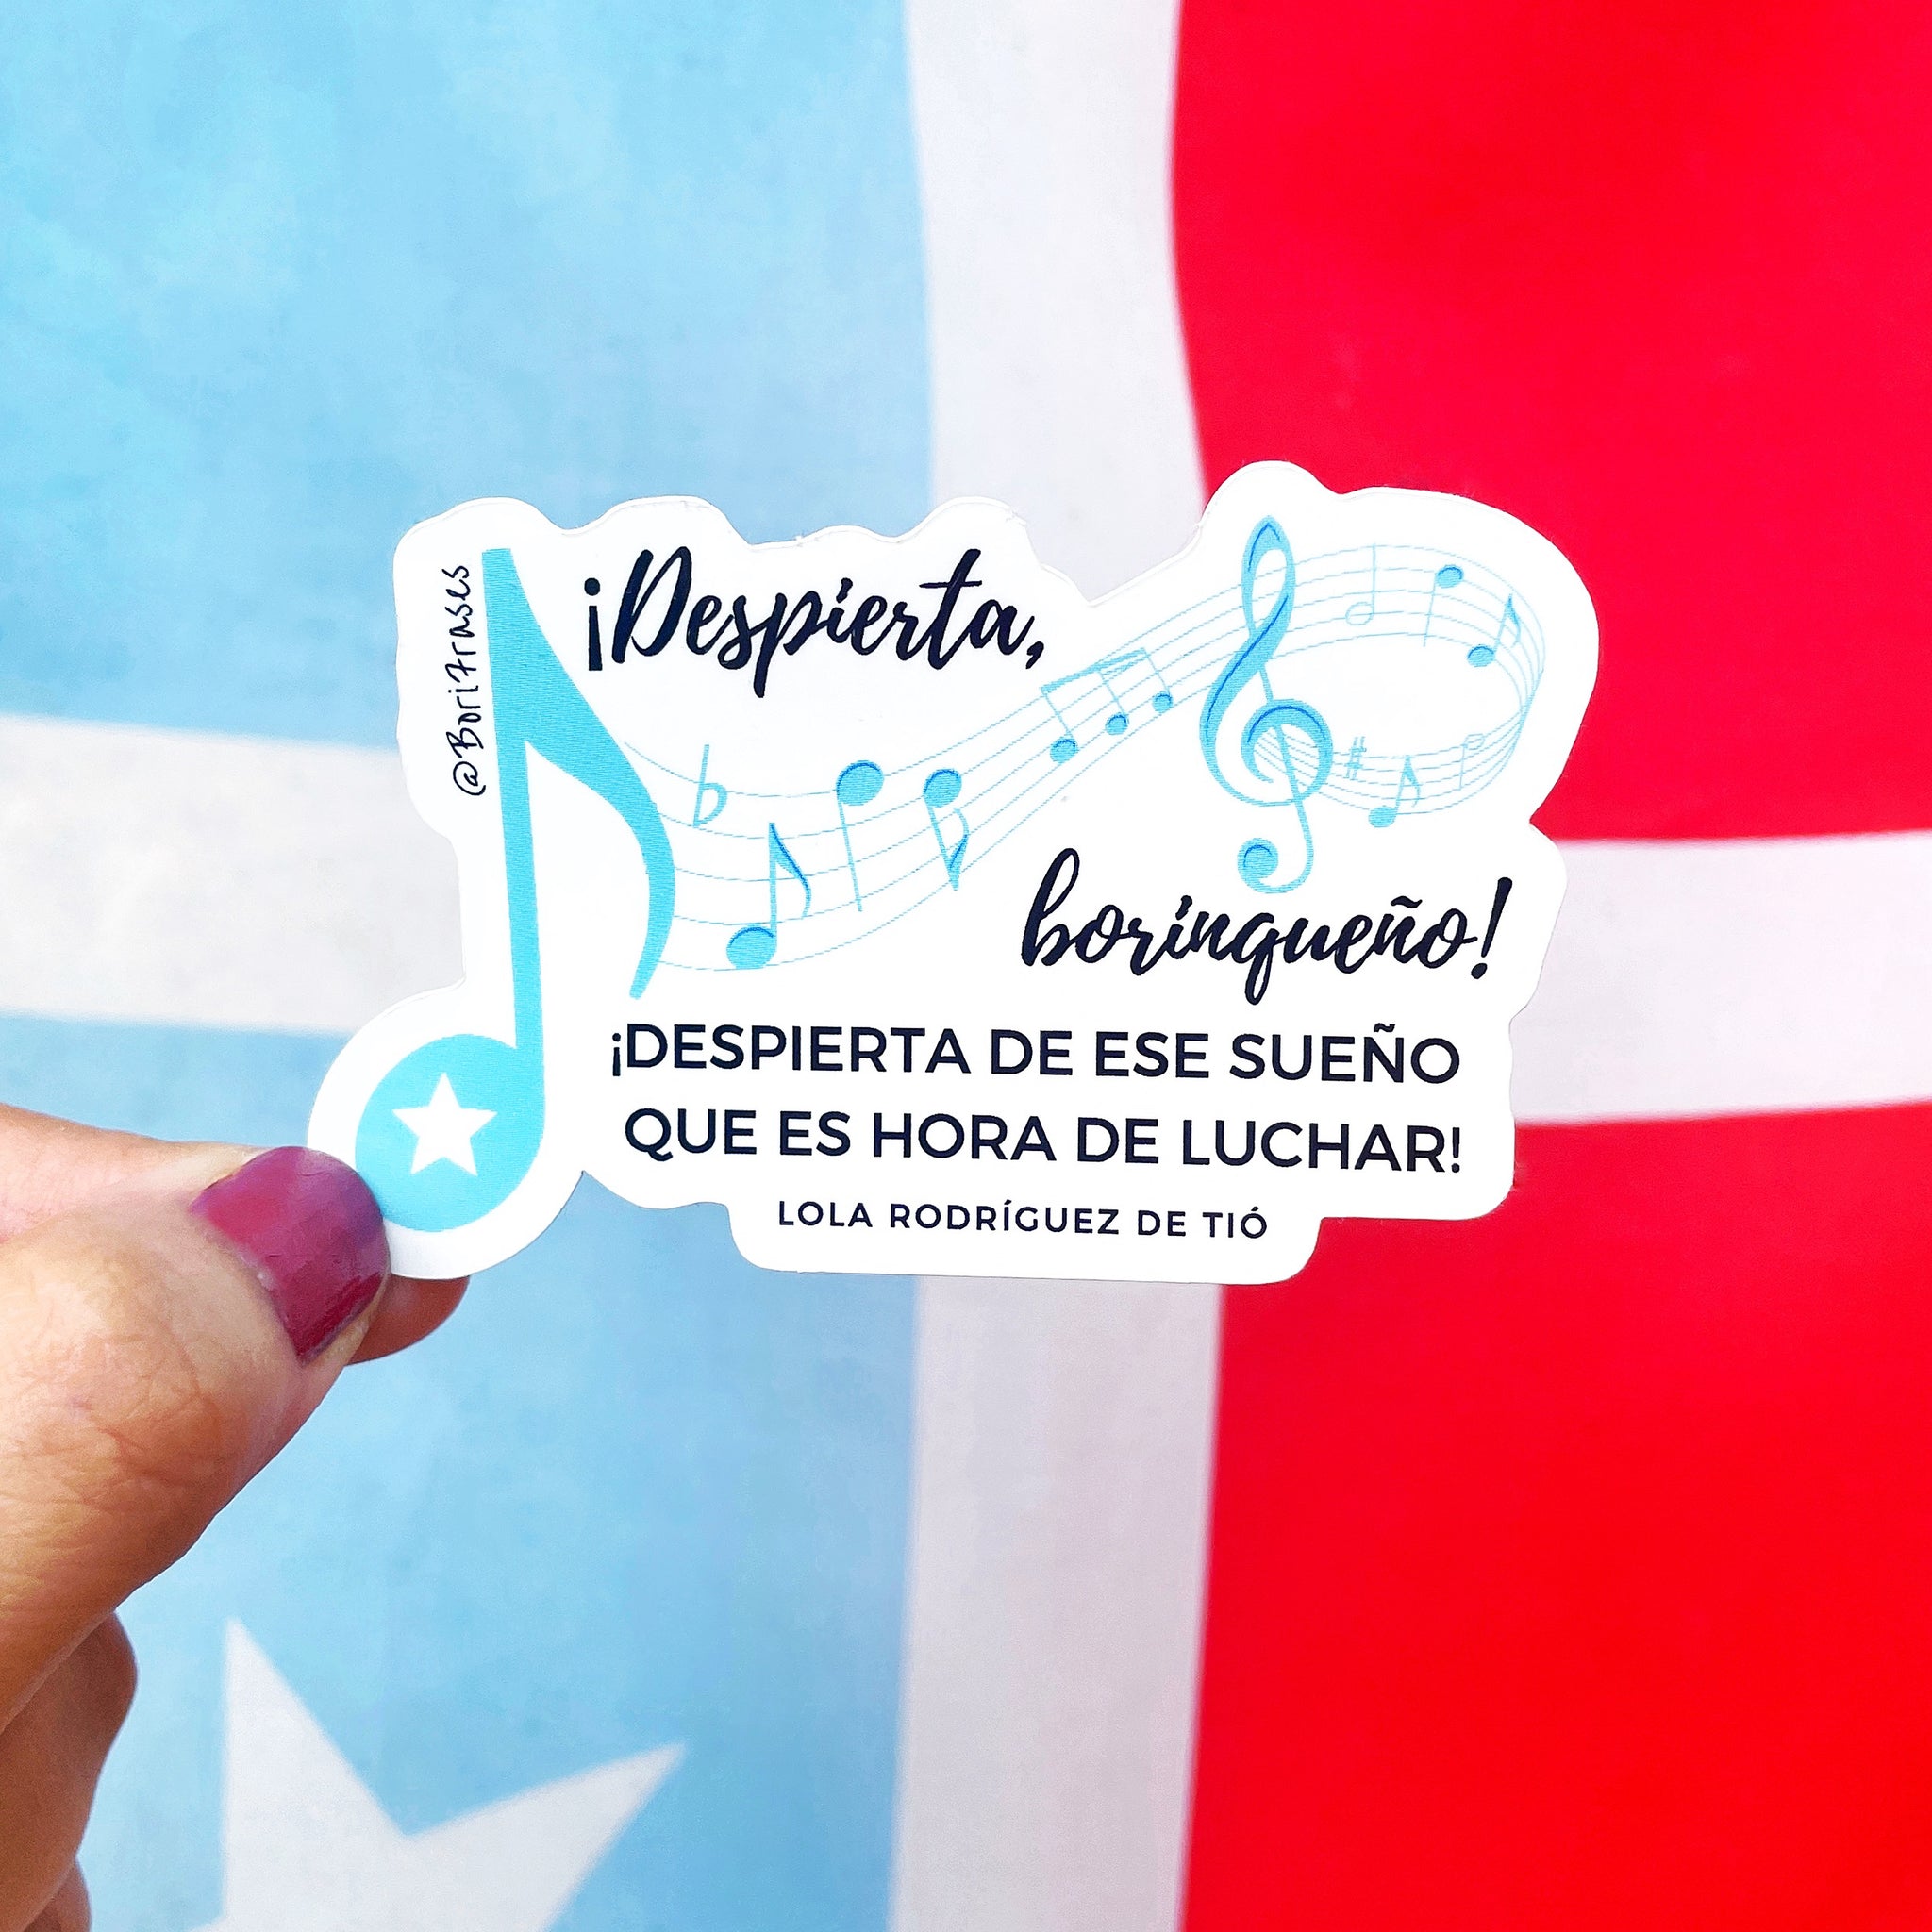 Sticker con versis del himno nacional original de Puerto Rico: La Borinqueña de Lola Rodríguez De Tió